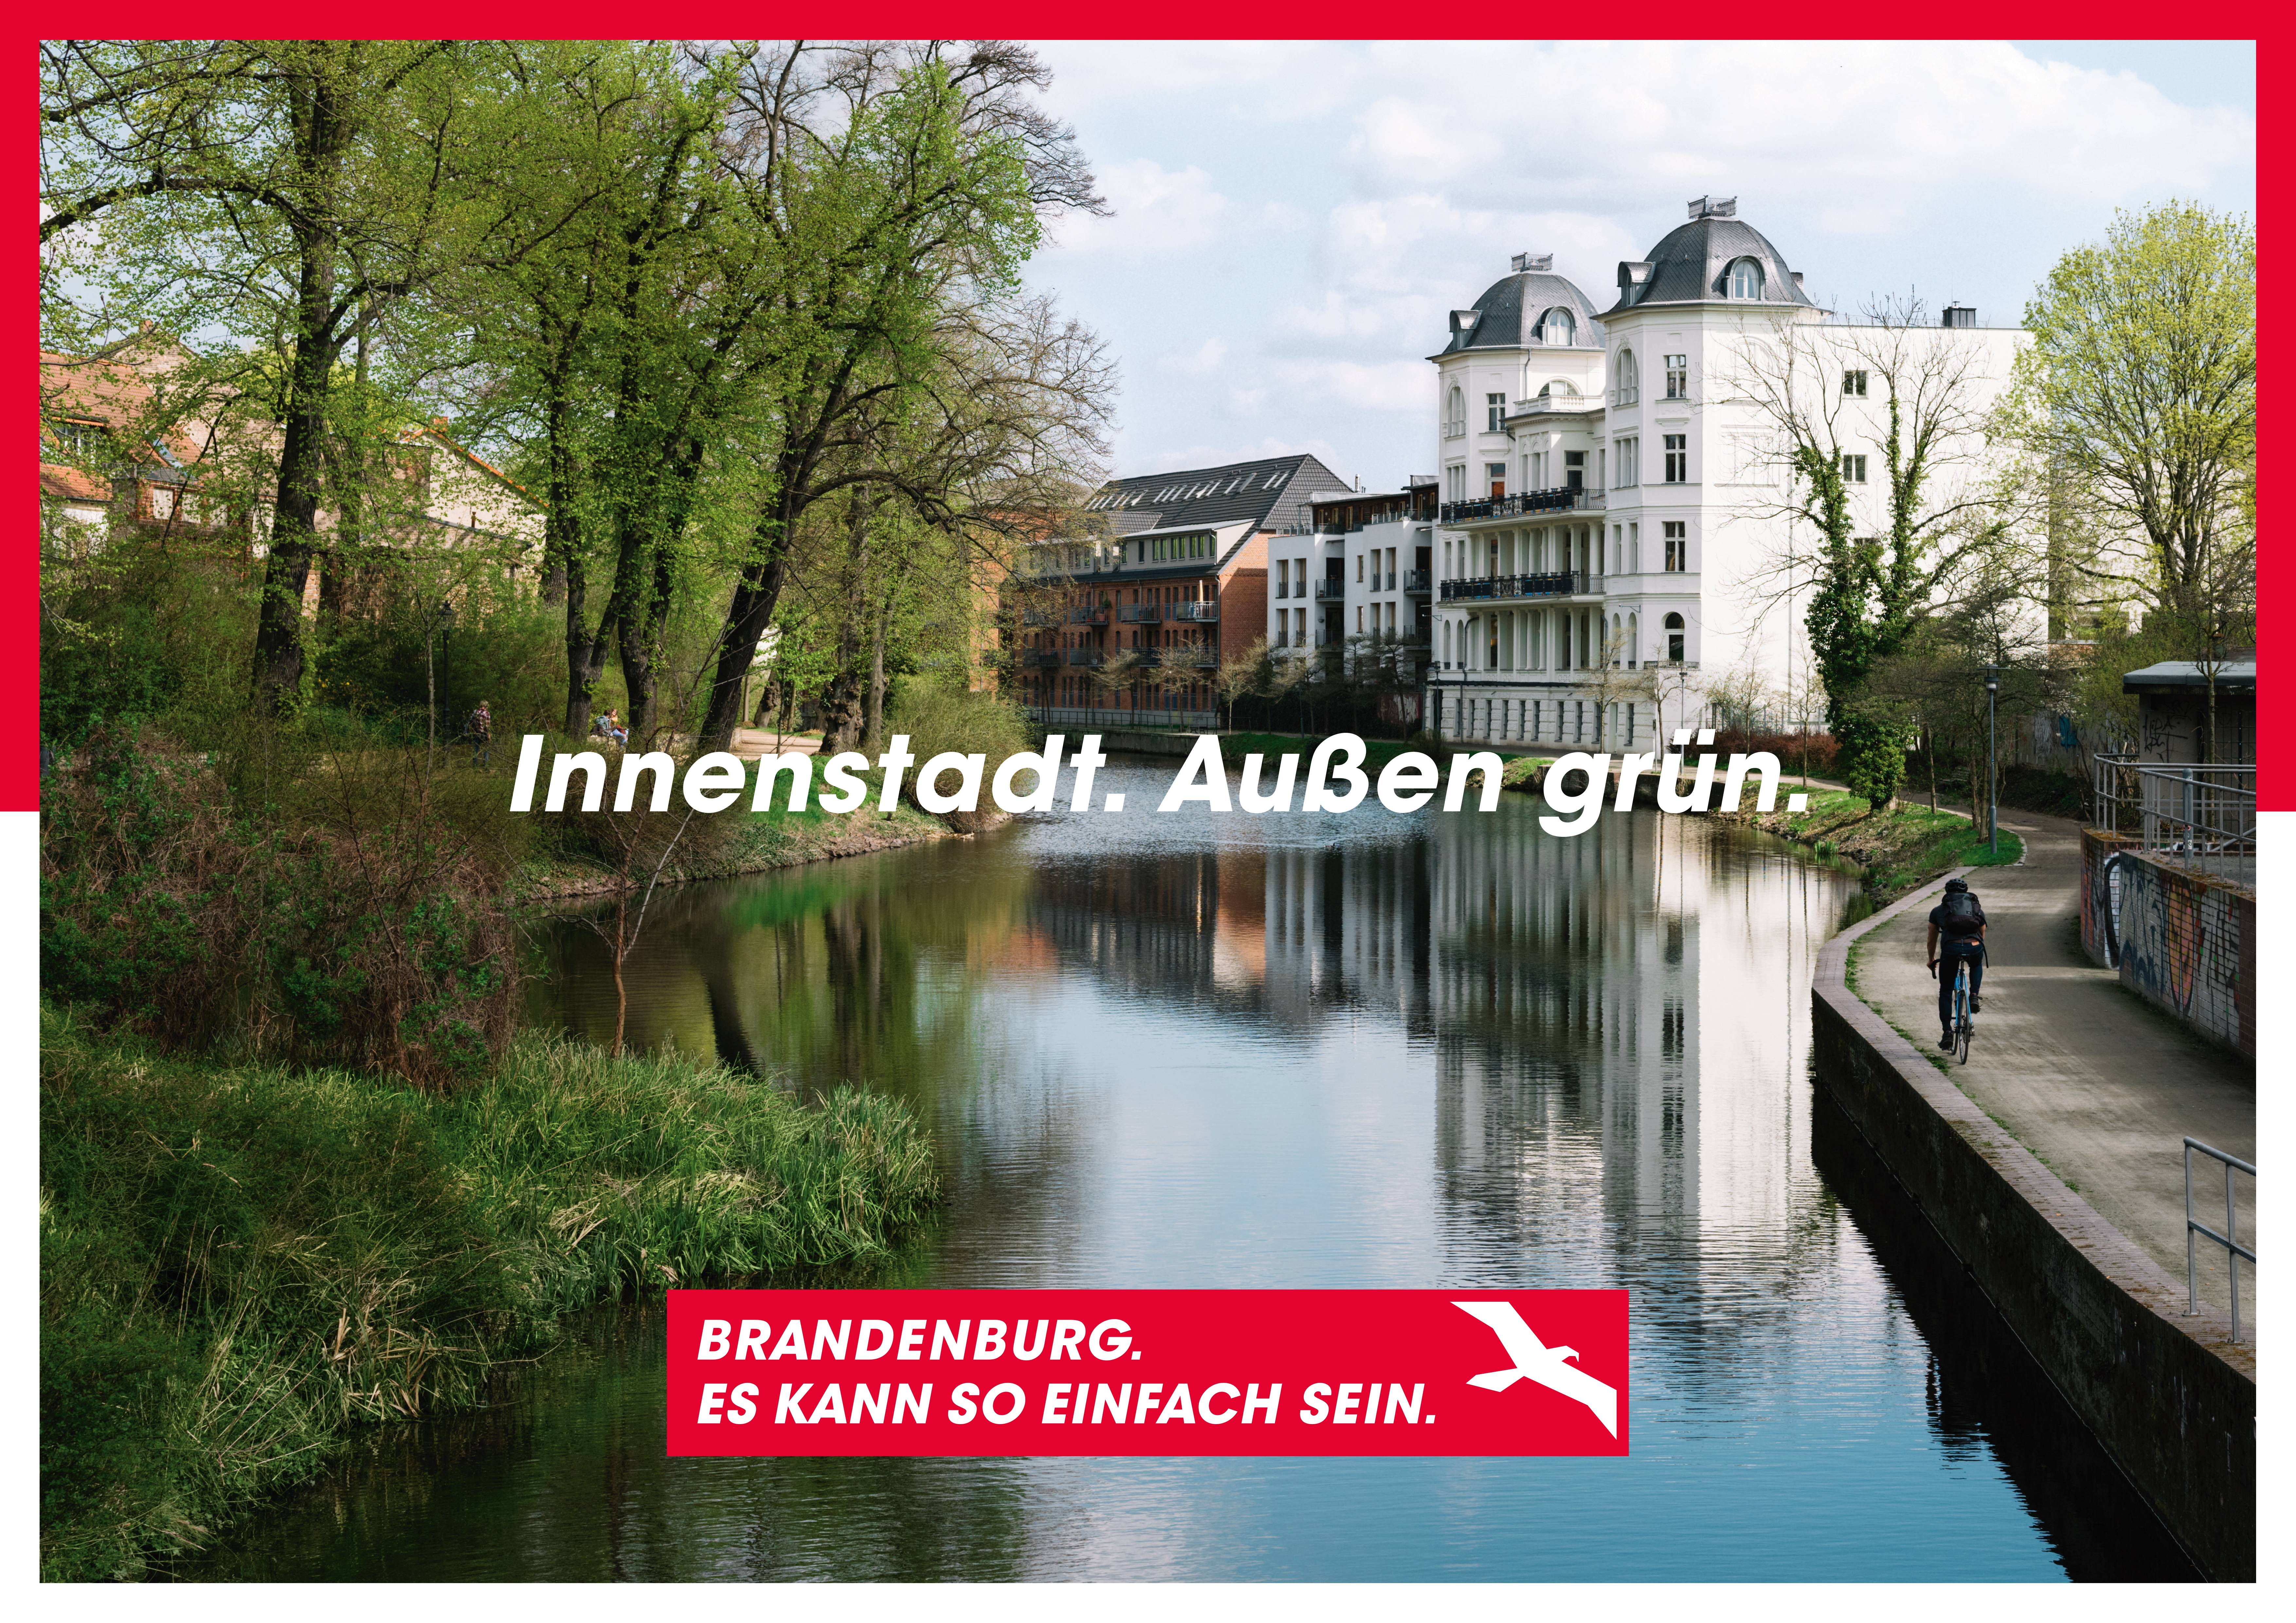 Ein Kanal in einer Stadt. Darauf der Schriftzug "Innenstadt. Außen grün".  Am unteren Bildrand das Kampagnenlogo mit dem Schriftzug "Brandenburg. Es kann so einfach sein."